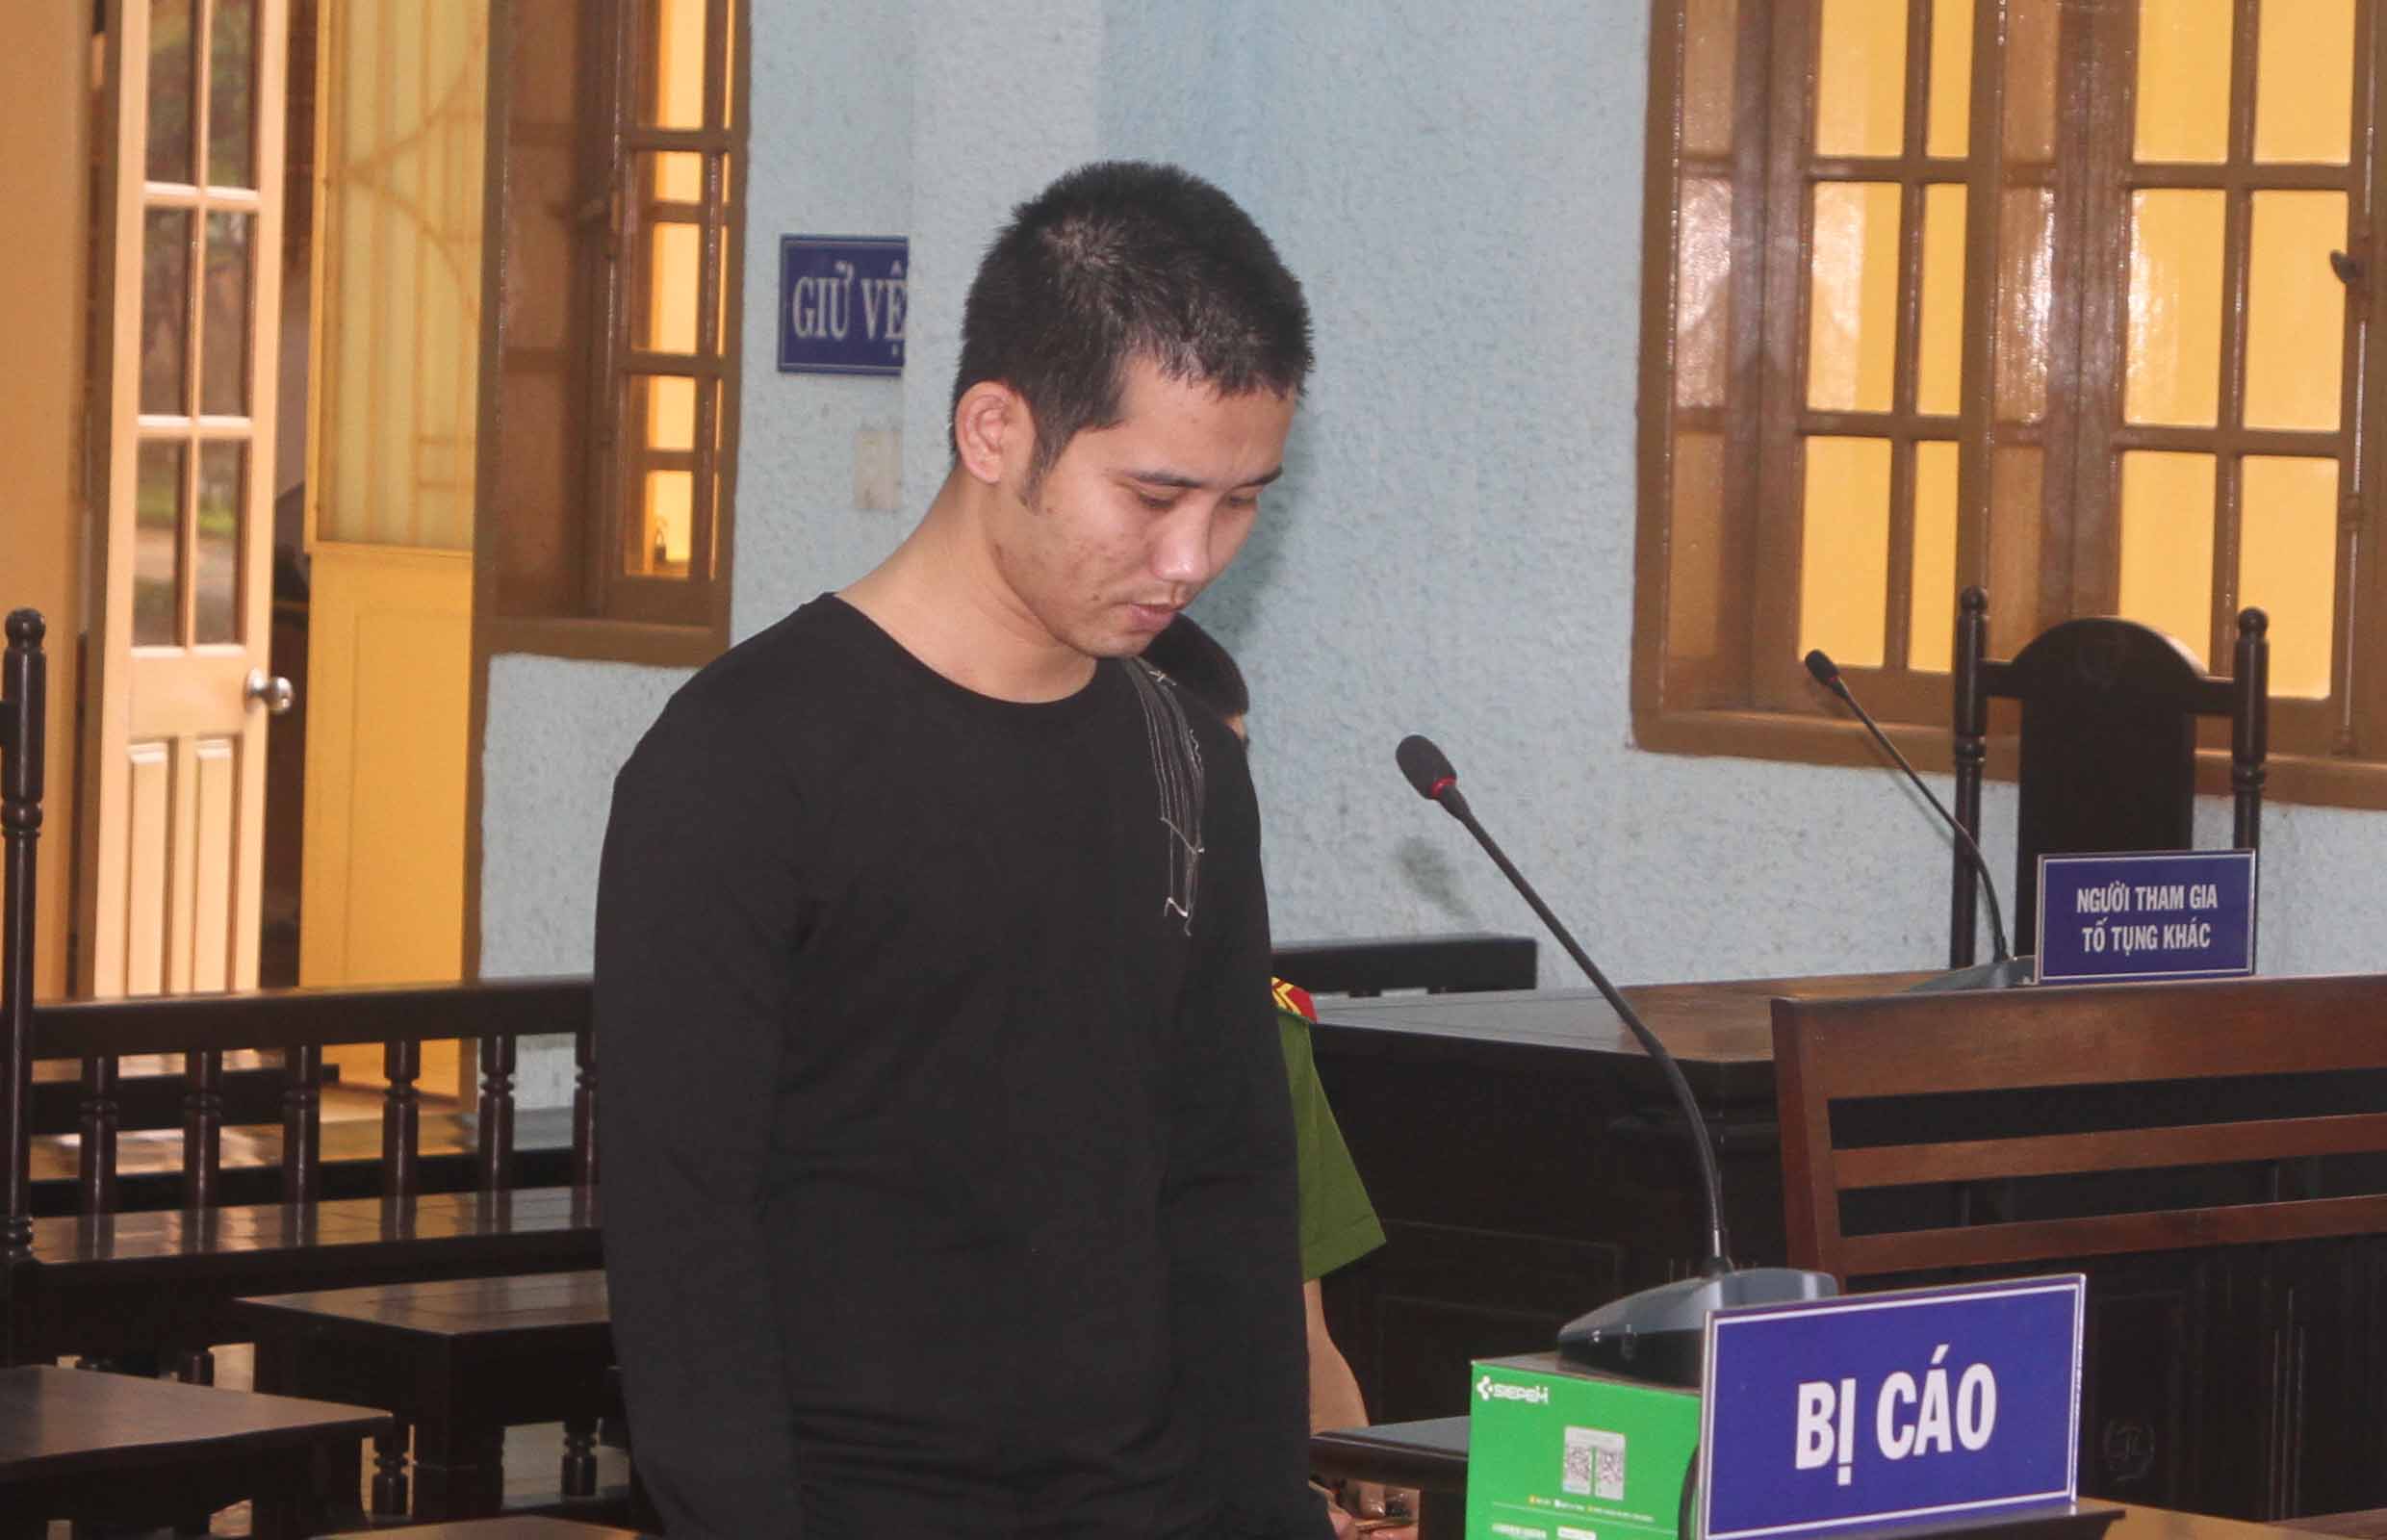  Bị cáo Phạm Trung Thắng đã bị kết án 12 tháng tù giam. Ảnh: Văn Ngọc 